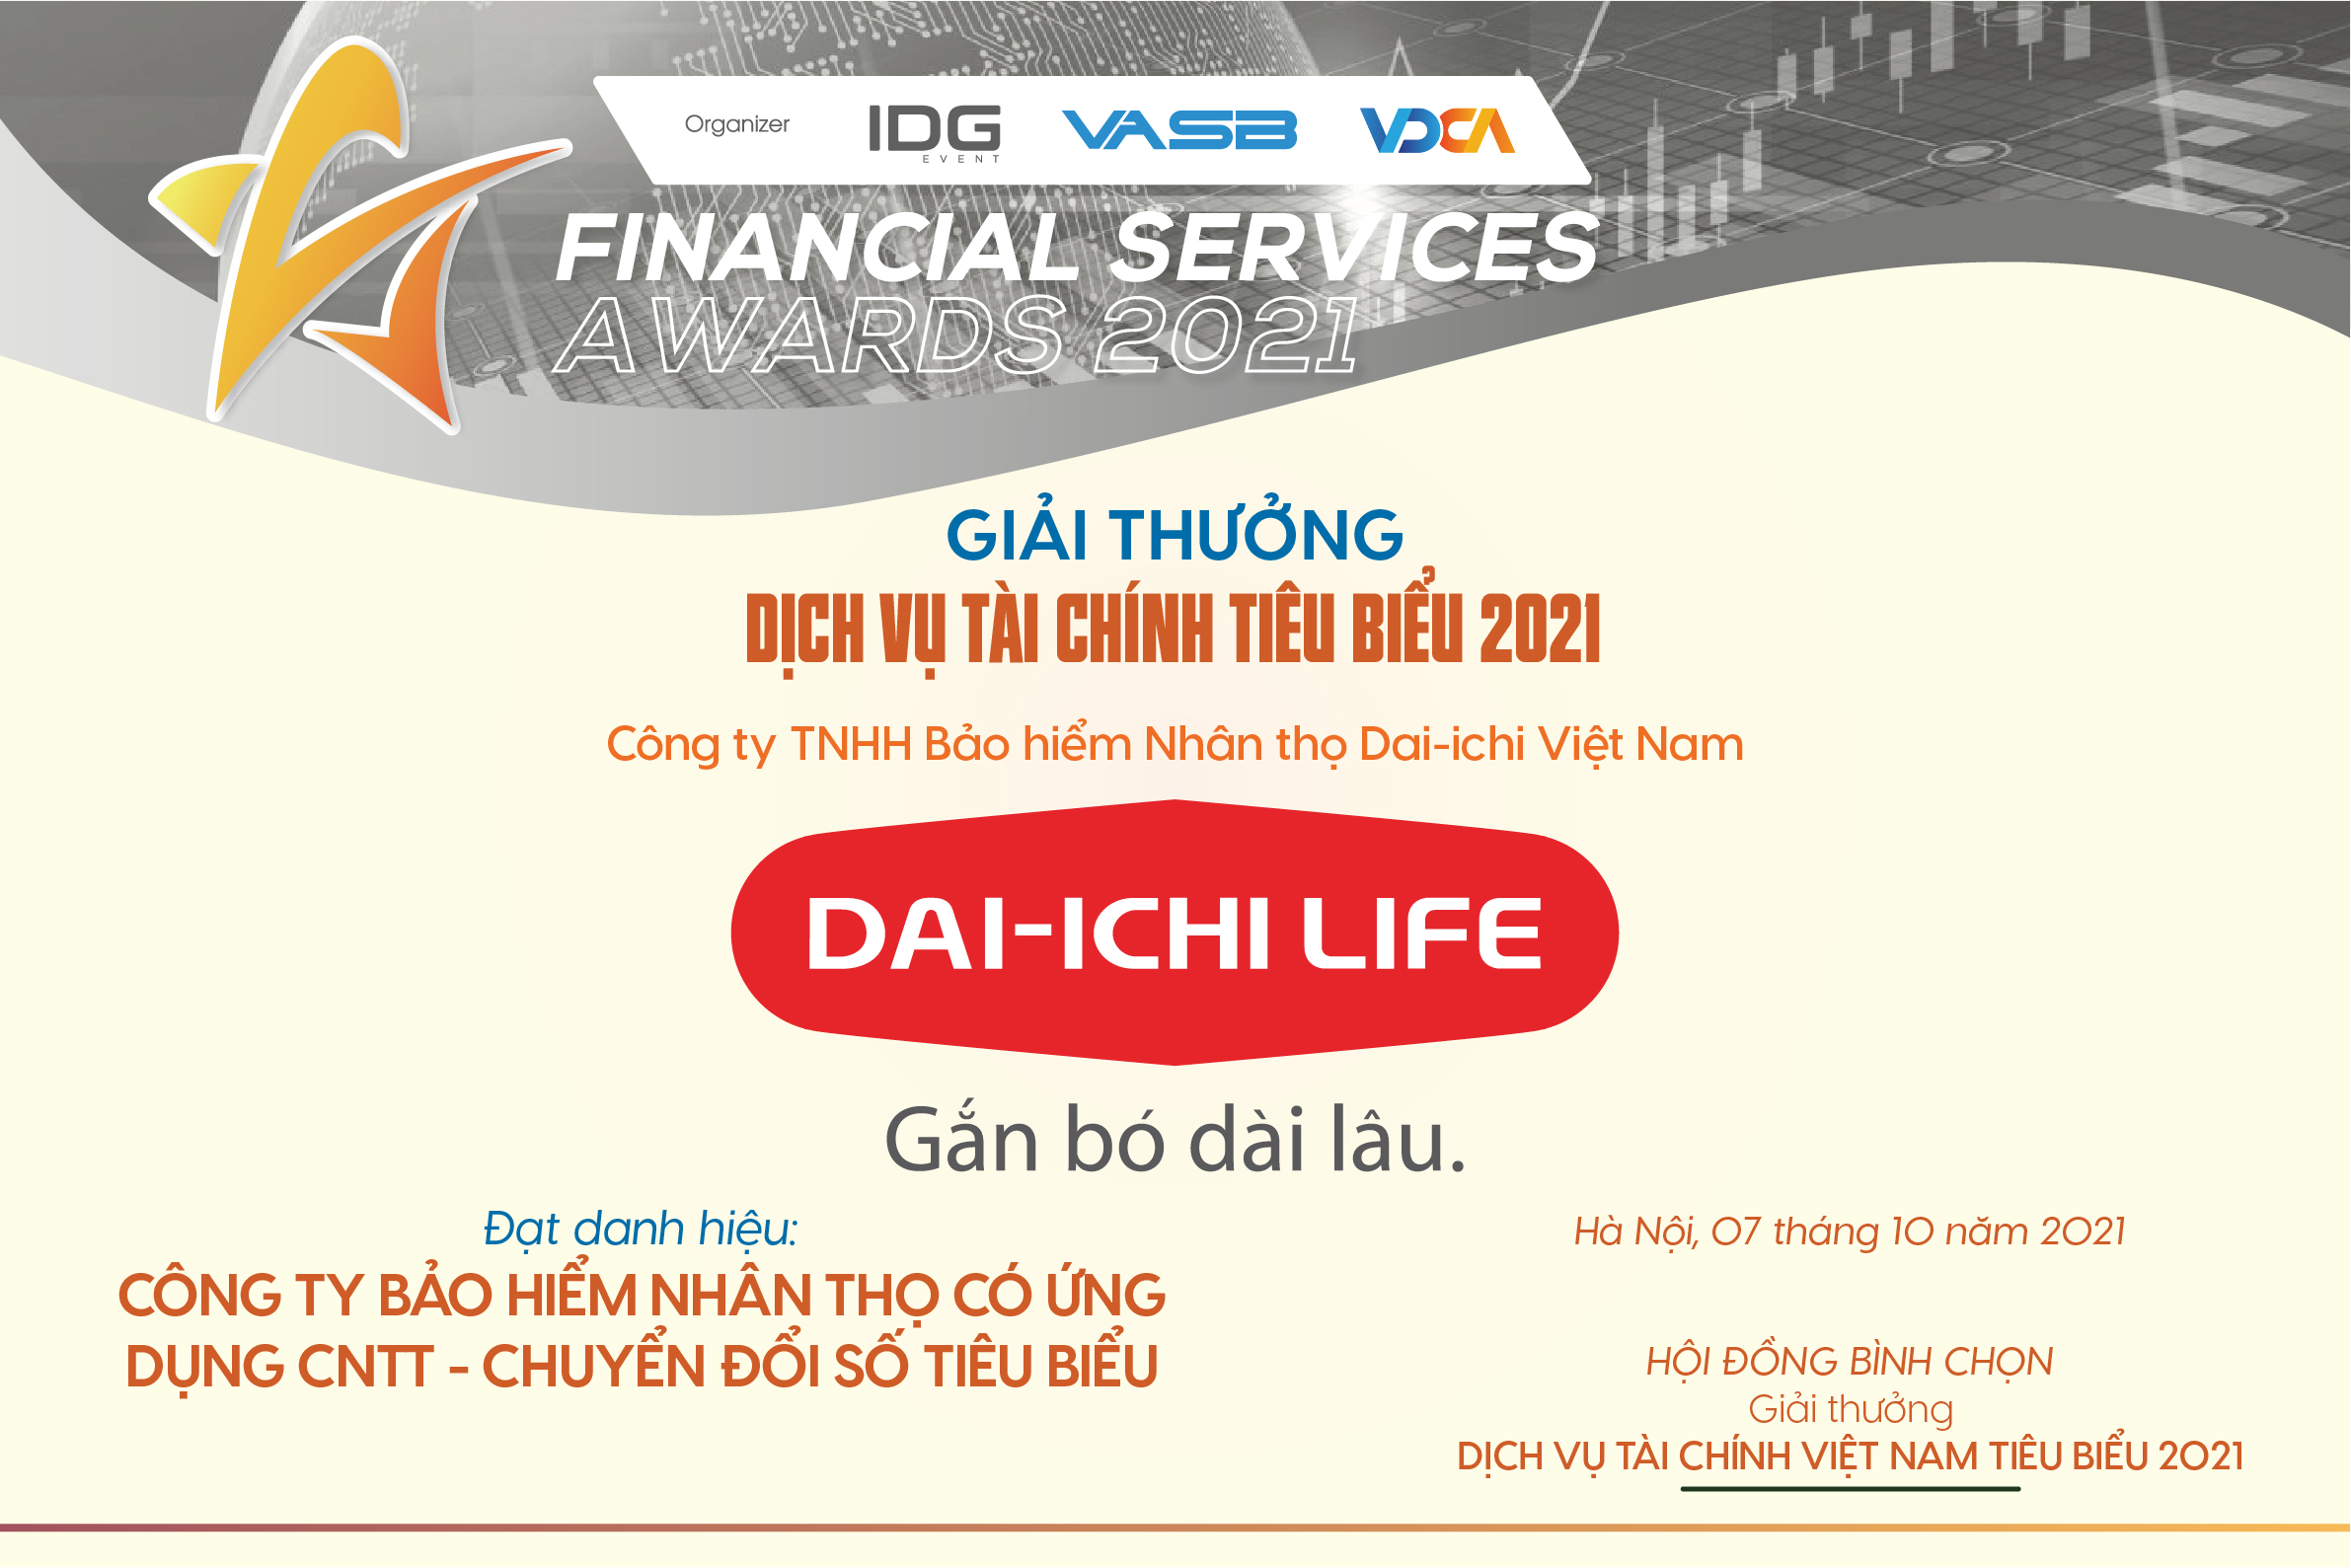 Công ty Bảo hiểm Nhân thọ Dai-ichi Việt Nam (Dai-ichi Life Việt Nam) vừa được vinh danh là “Công ty Bảo hiểm Nhân thọ có Ứng dụng Công nghệ Thông tin – Chuyển đổi số tiêu biểu” tại chương trình Giải thưởng Dịch vụ Tài chính Tiêu biểu 2021.